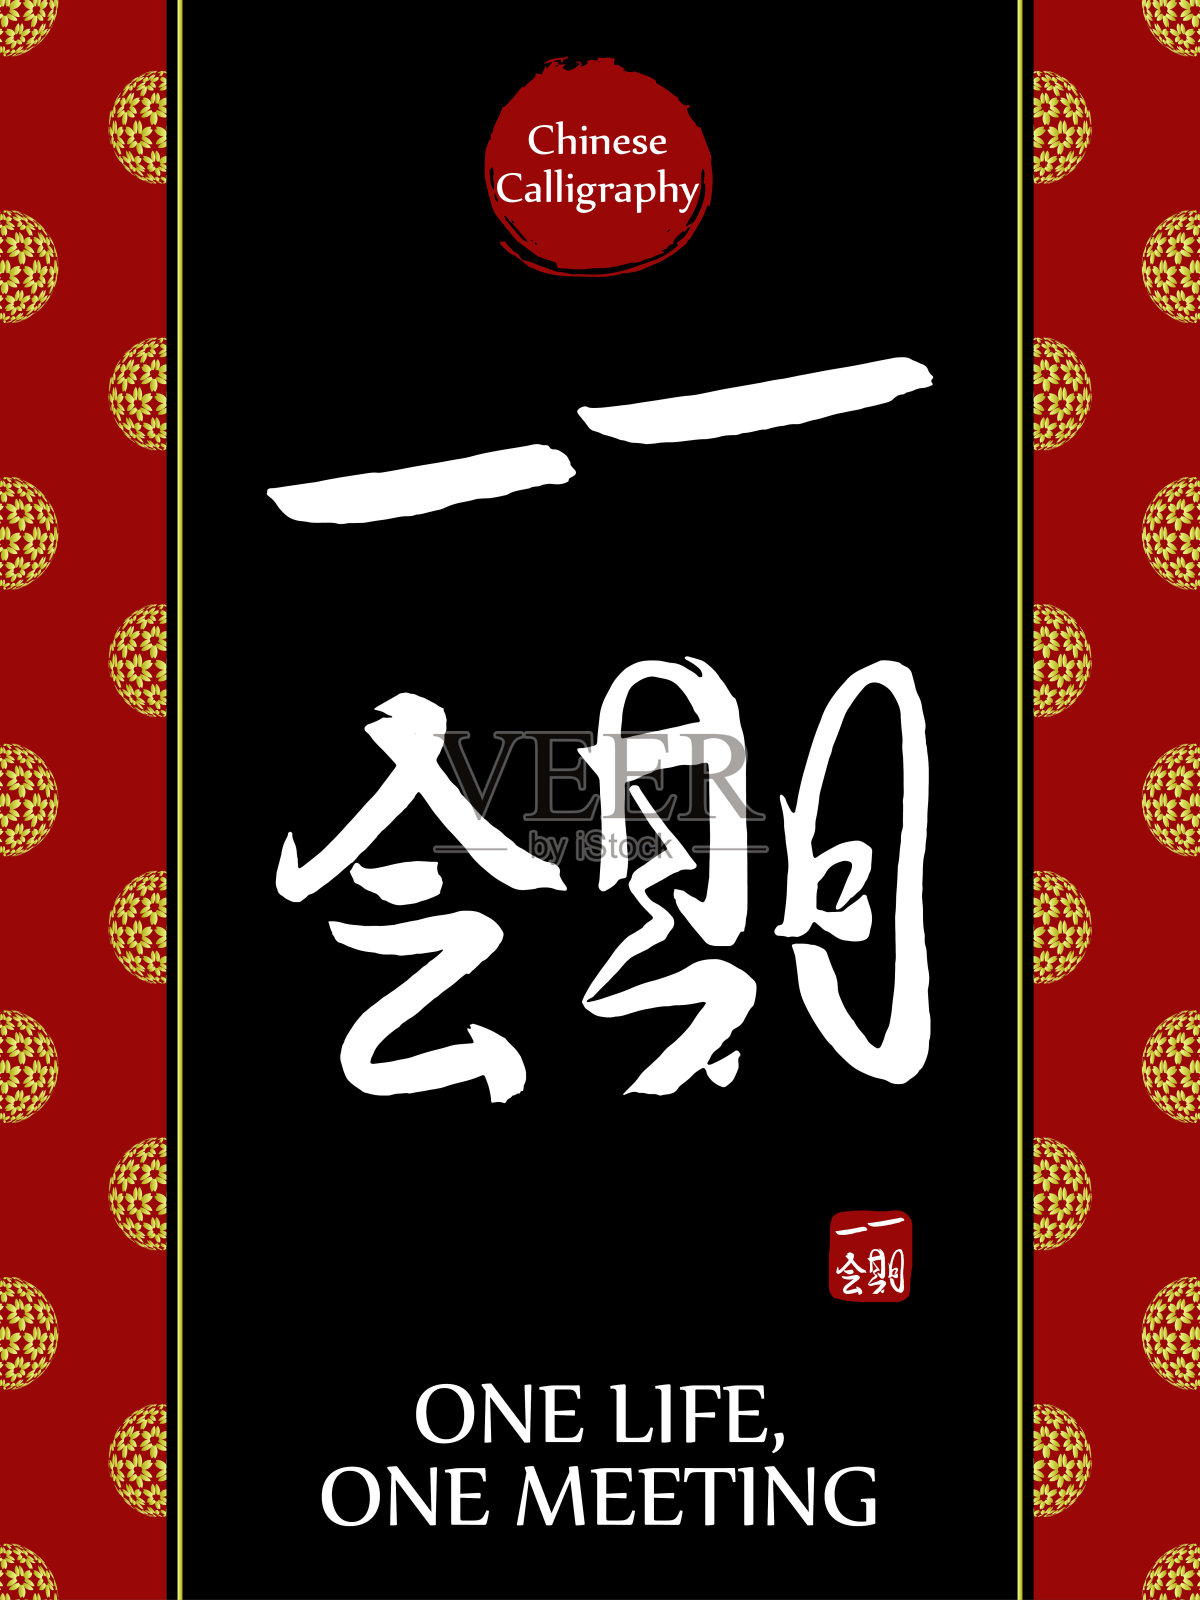 中国书法象形文字翻译:一次生命，一次相遇。亚洲金花球农历新年图案。向量中国符号在黑色背景。手绘图画文字。毛笔书法插画图片素材